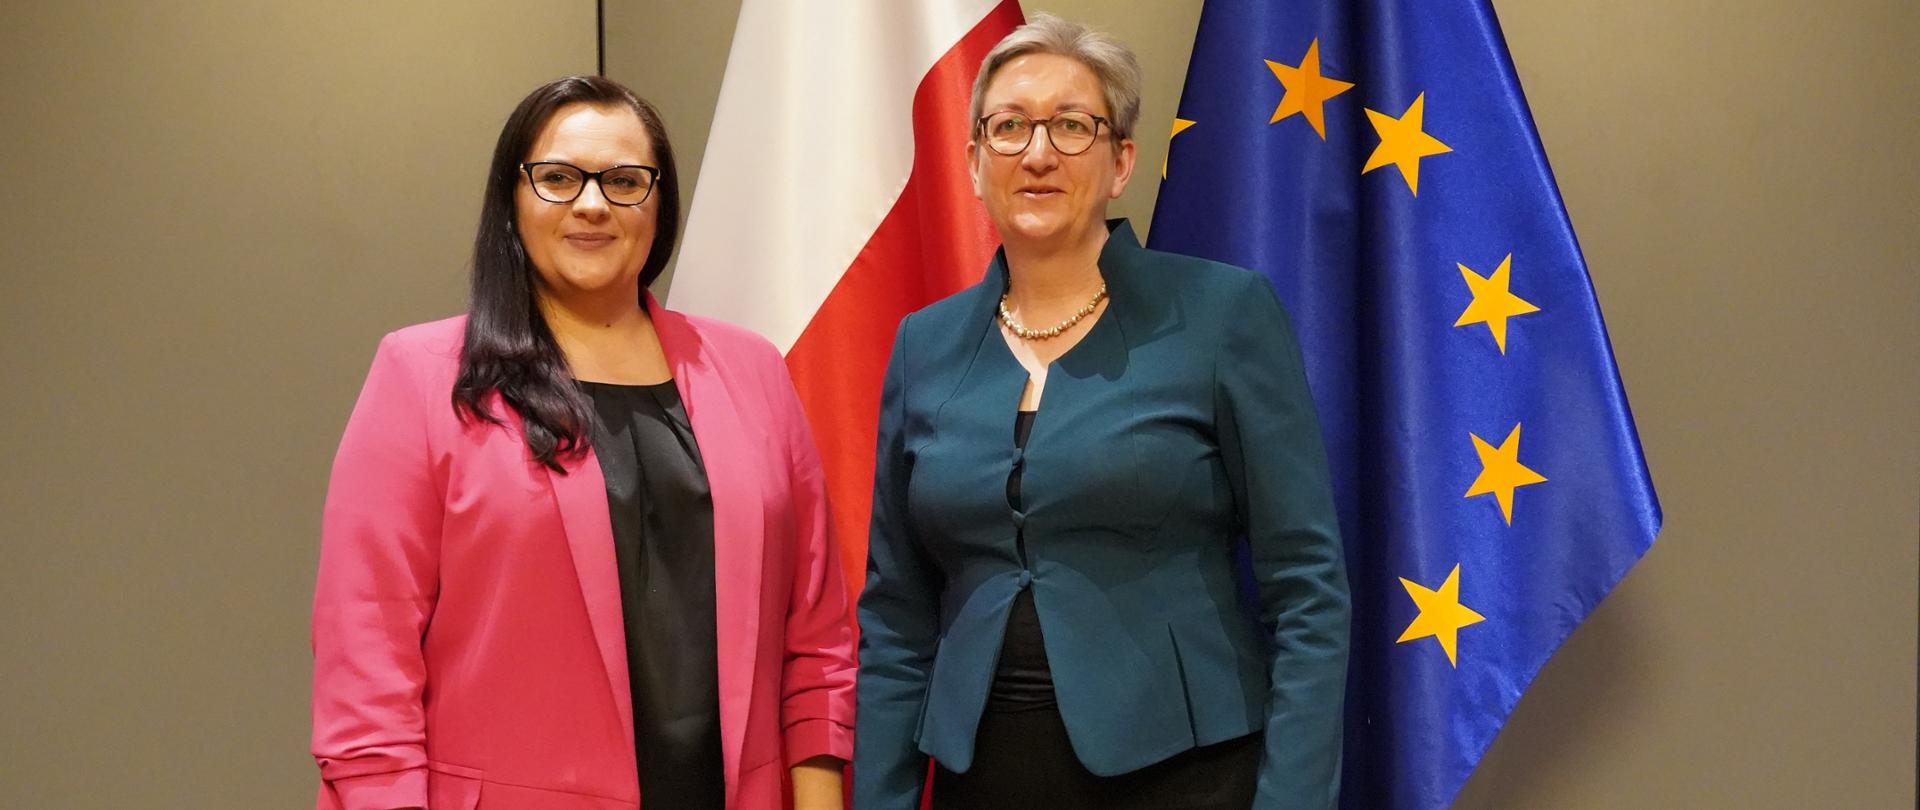 Na tle flag Polski i UE stoją wiceminister Małgorzata Jarosińska-Jedynak oraz niemiecka minister Klara Geywitz